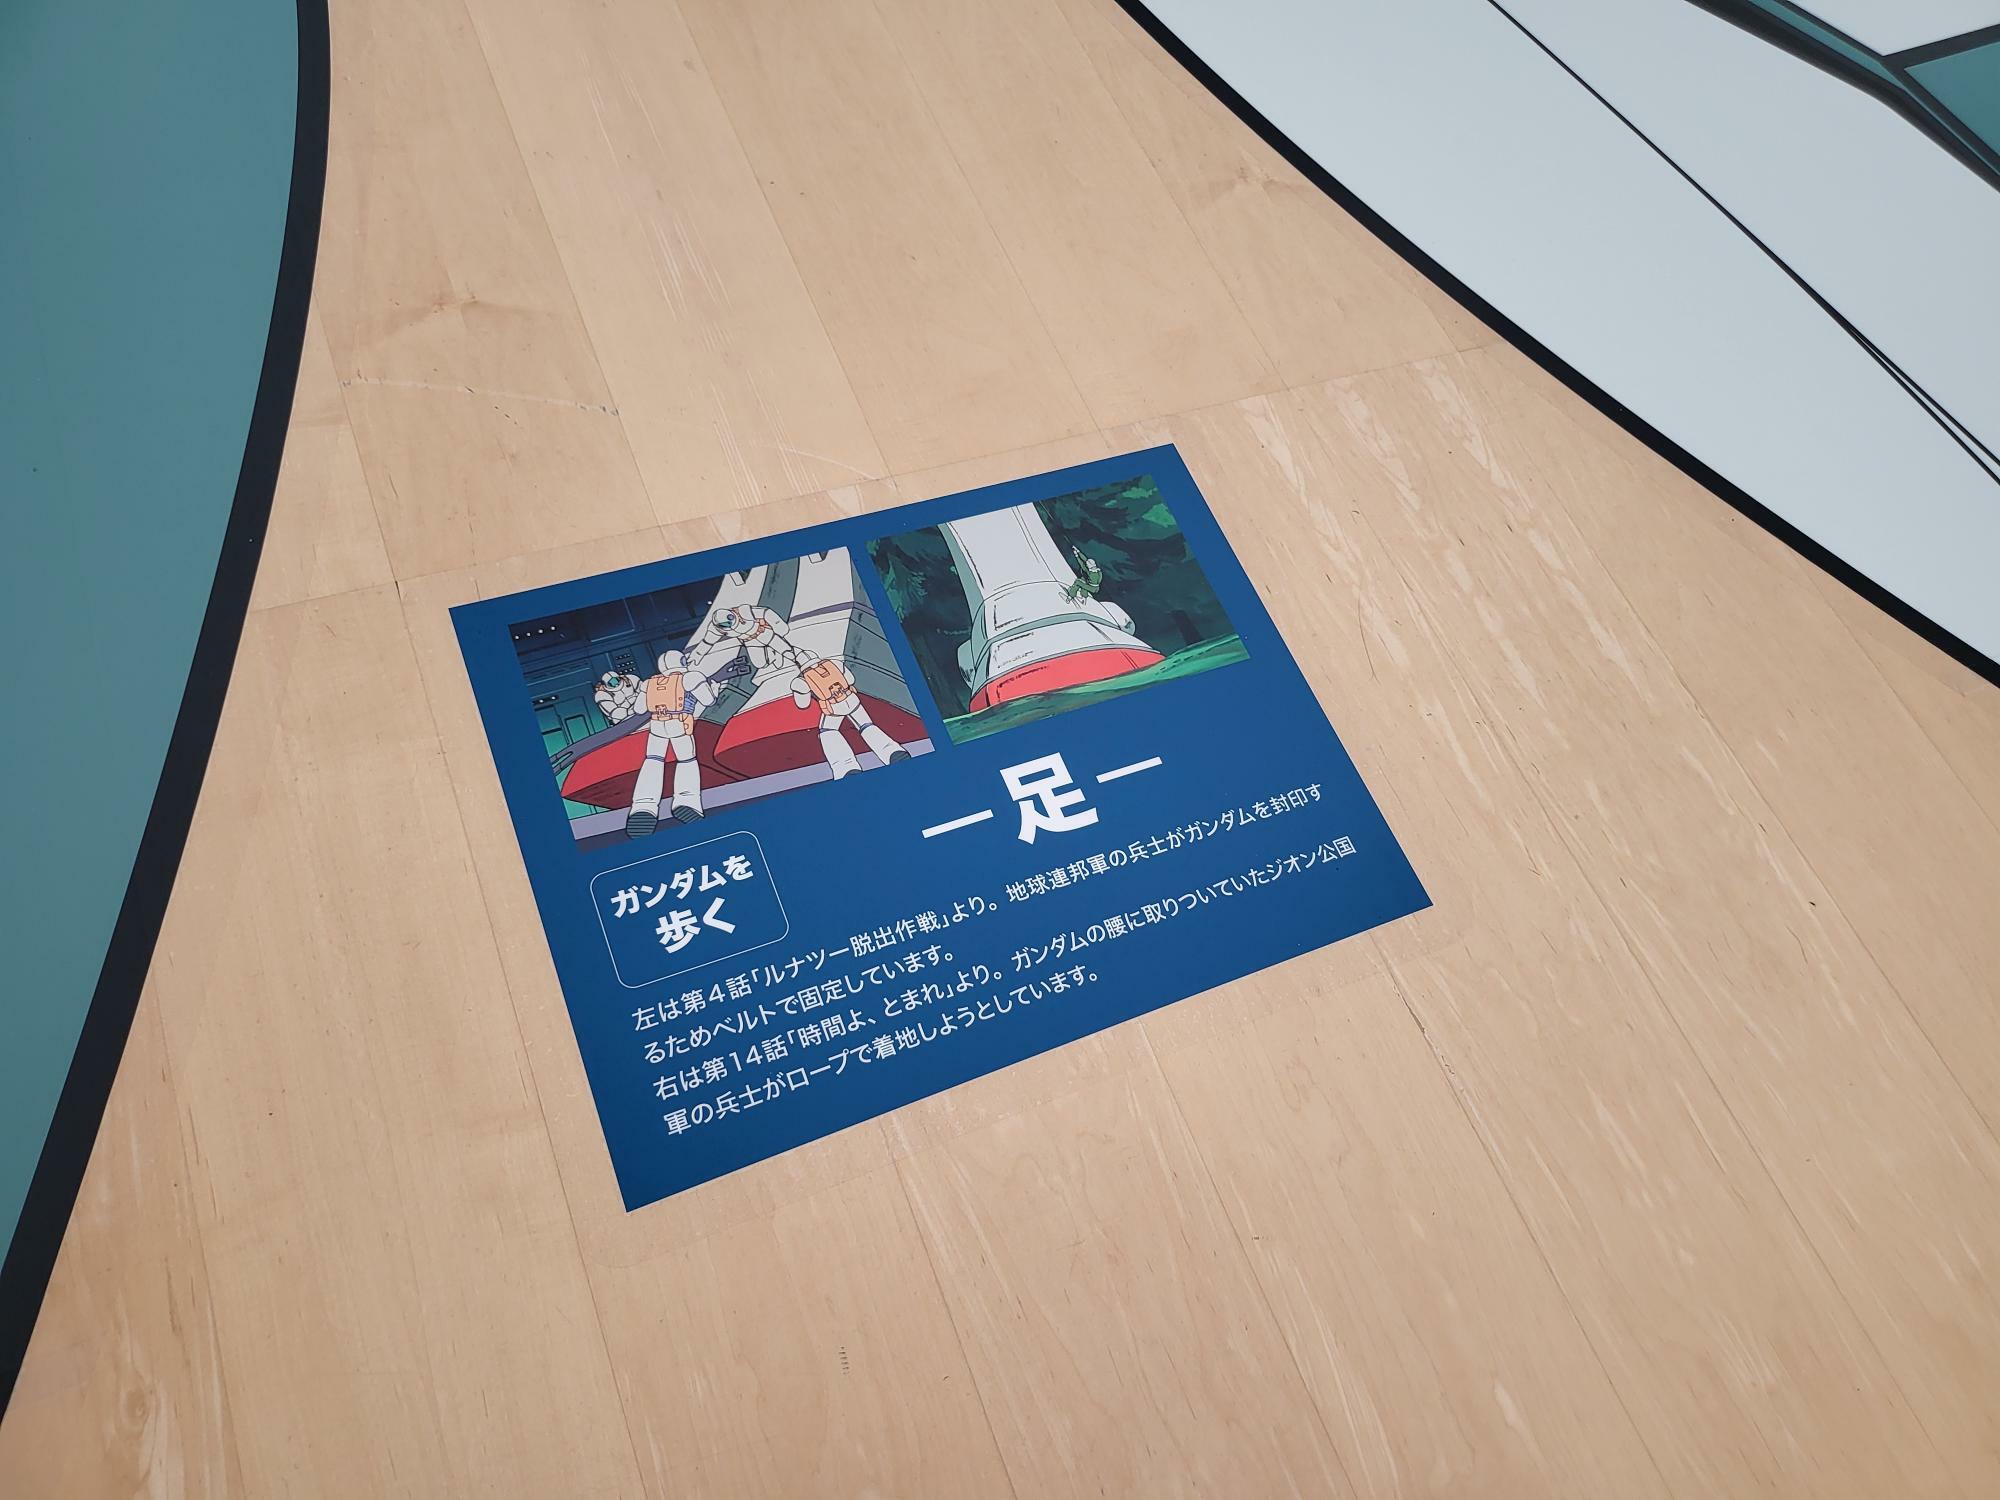 「日本の巨大ロボット群像」展より著者撮影